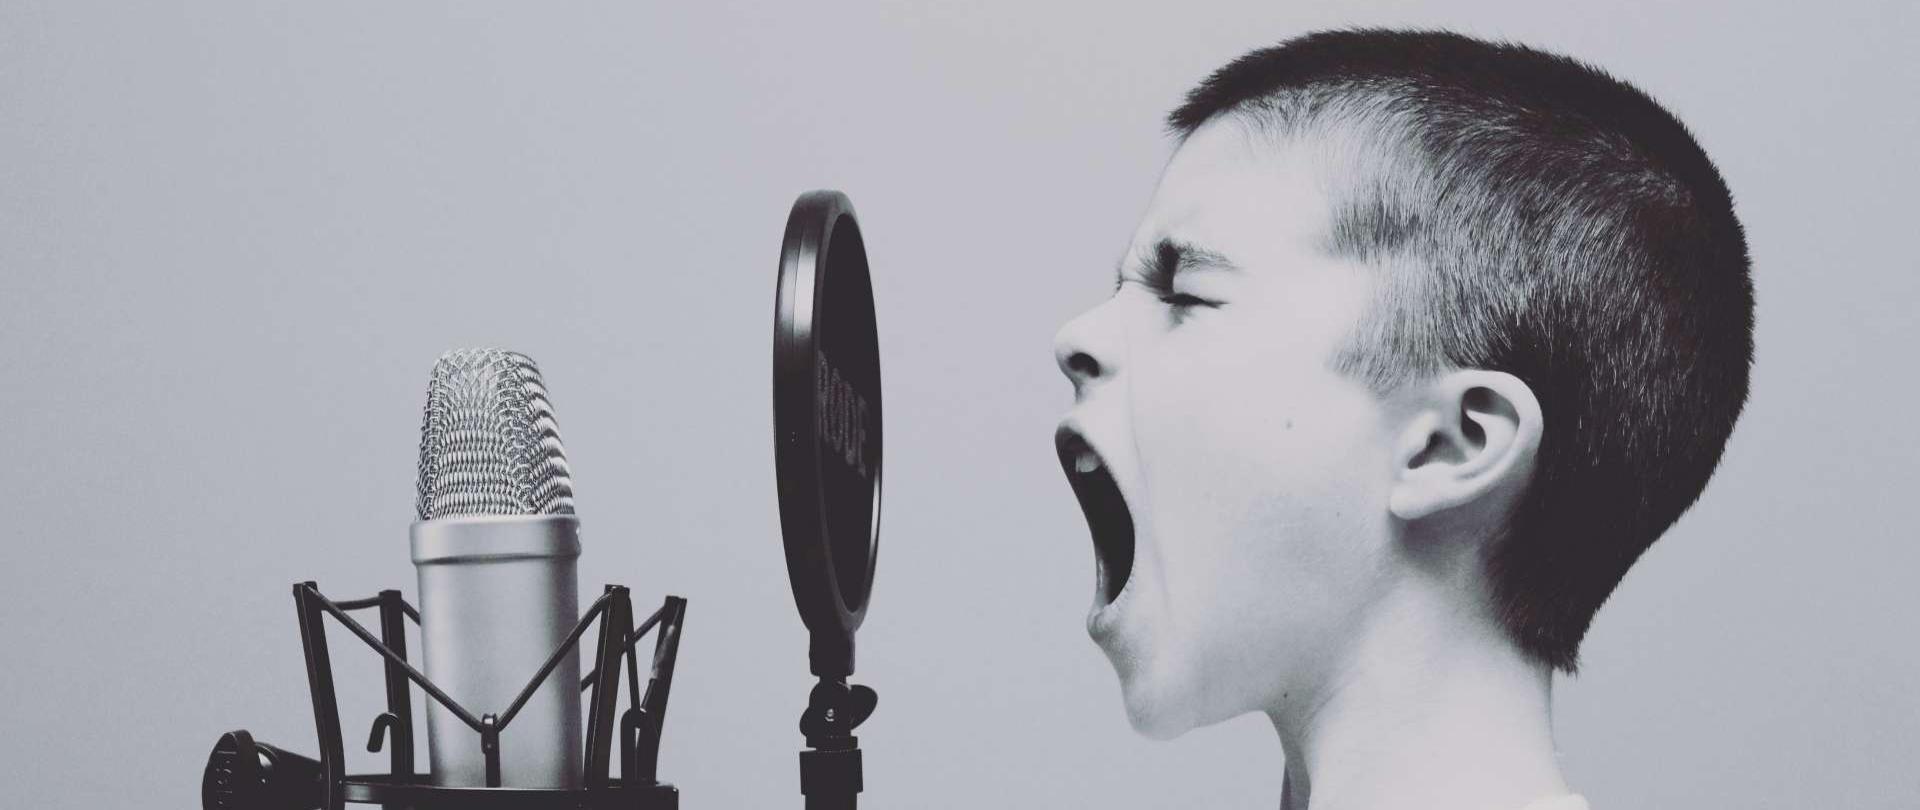 zdjęcie przedstawia ciemnowłosego chłopca ubranego w biały podkoszulek, chłopiec śpiewa do mikrofonu studyjnego